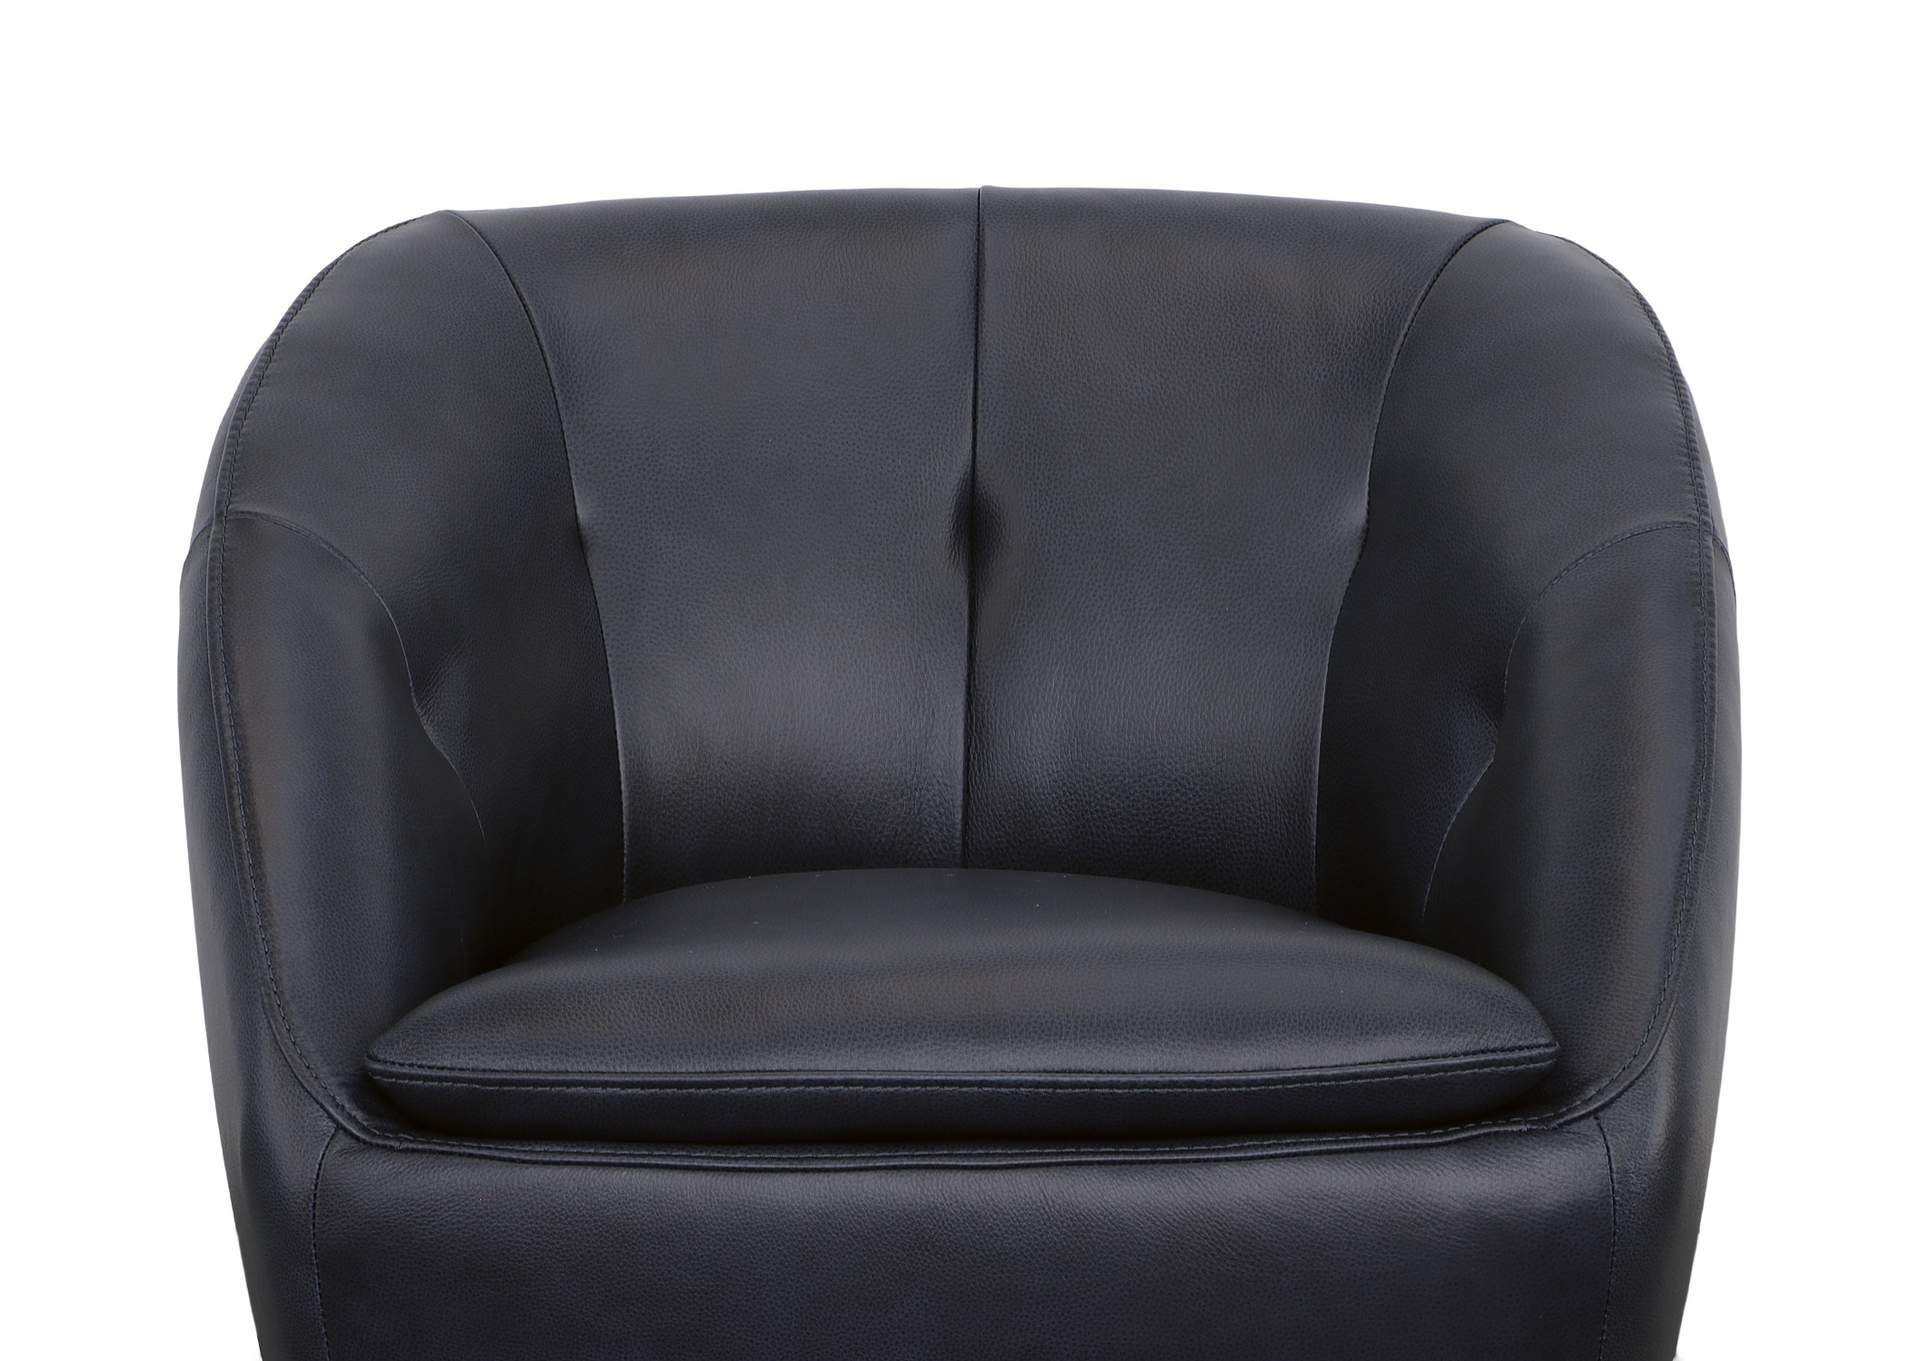 Wade Swivel Chair,Flexsteel